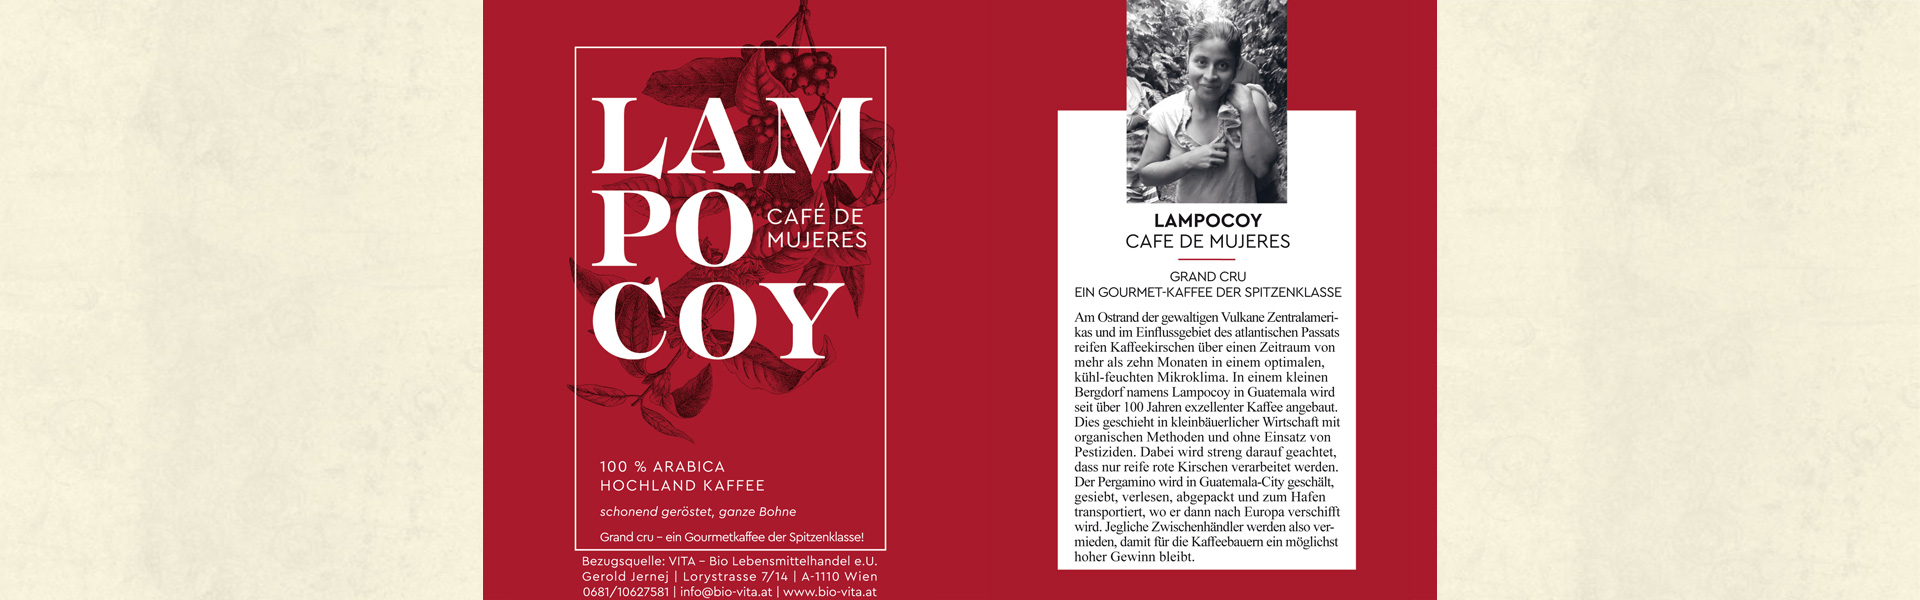 Slider06_Lampocoy-Cafe_de_Mujeres